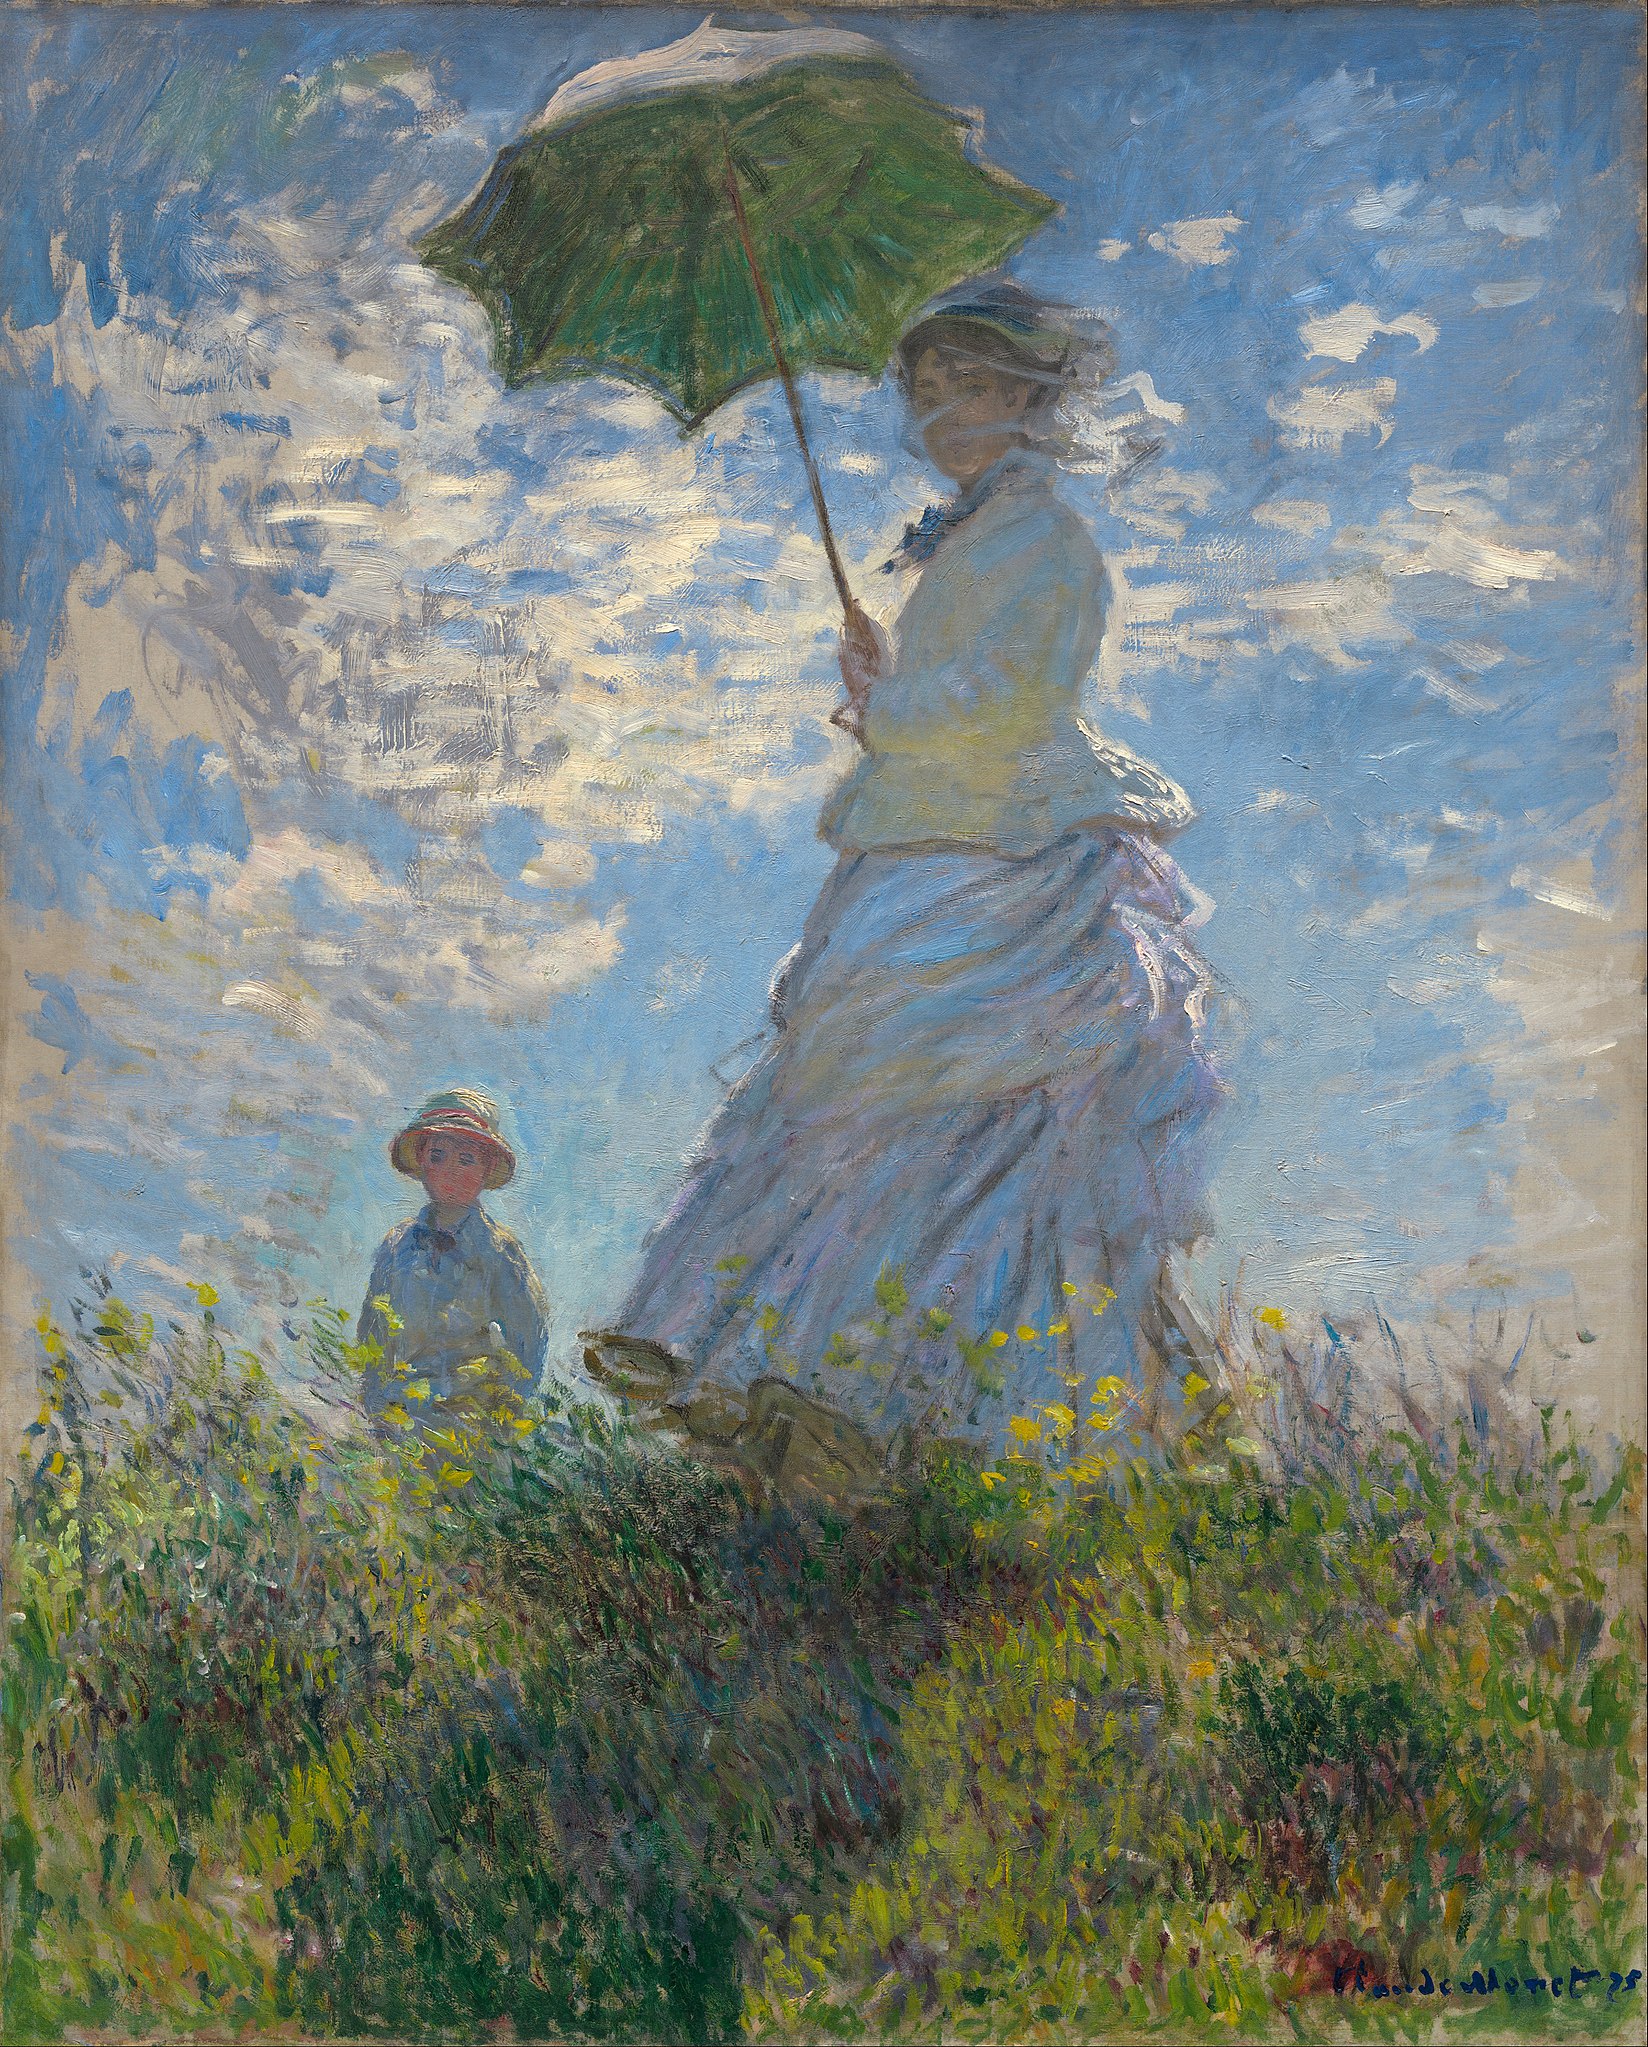 散歩、日傘をさす女性 by Claude Monet - 1875年 - 100 × 81 cm 